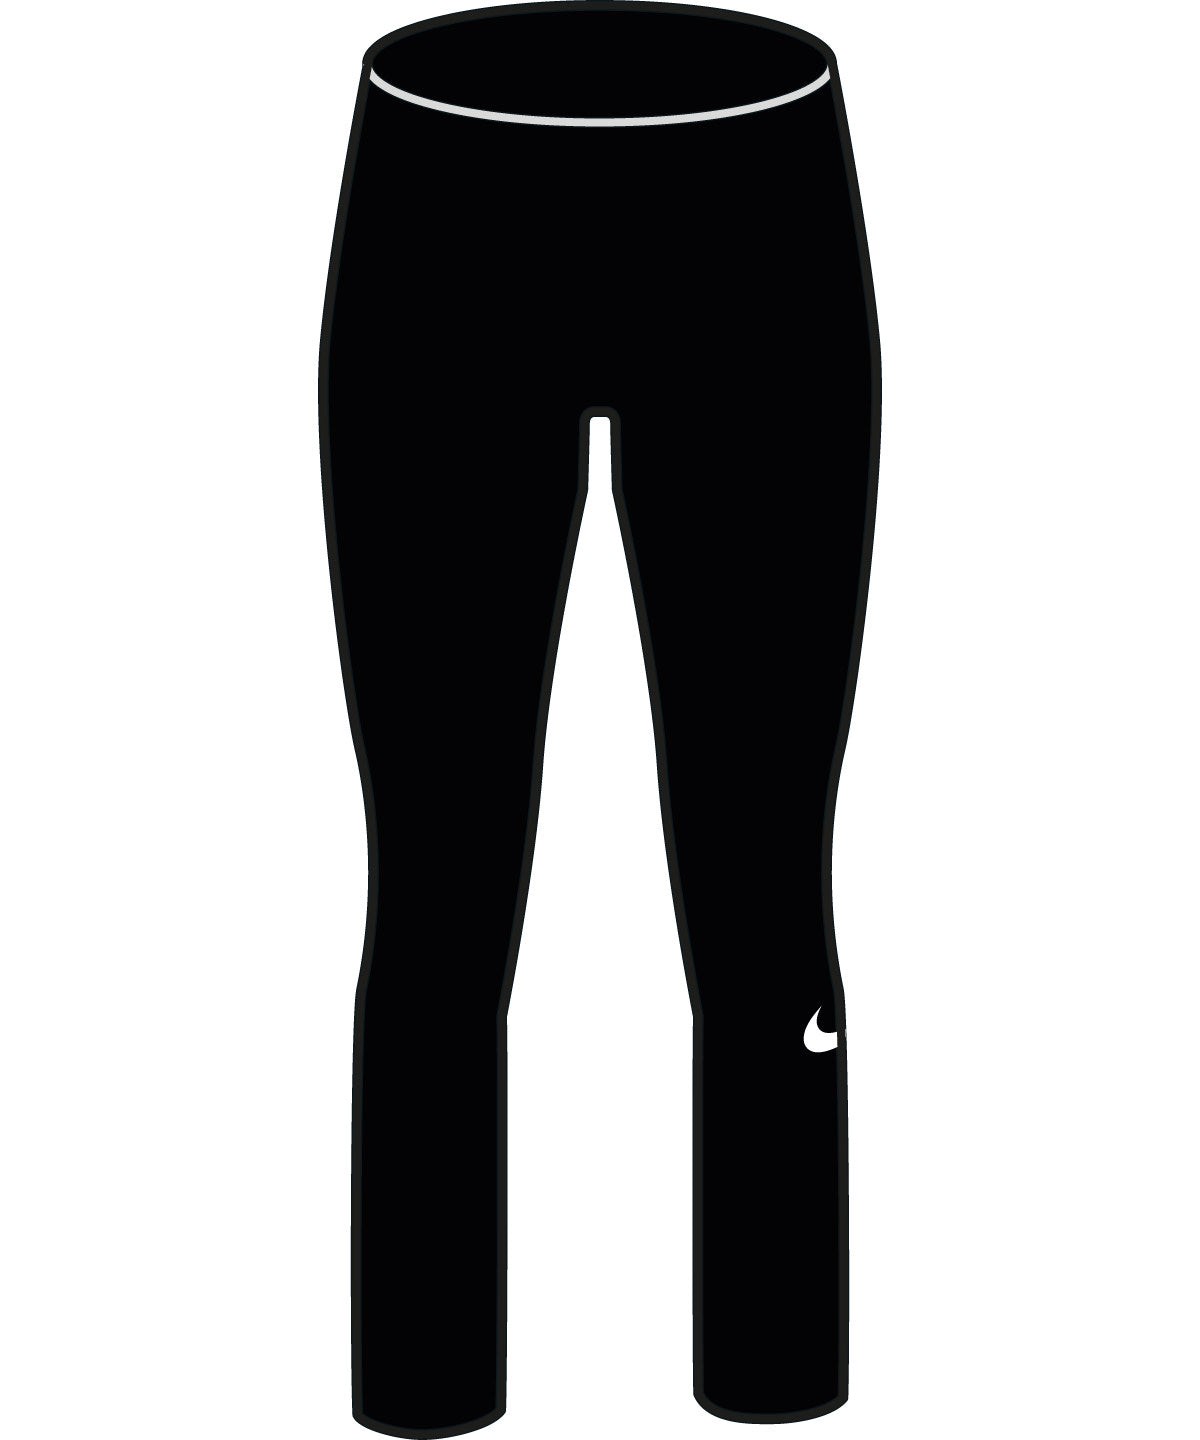 Leggings - Women’s Nike One Dri-FIT 7/8 Leggings